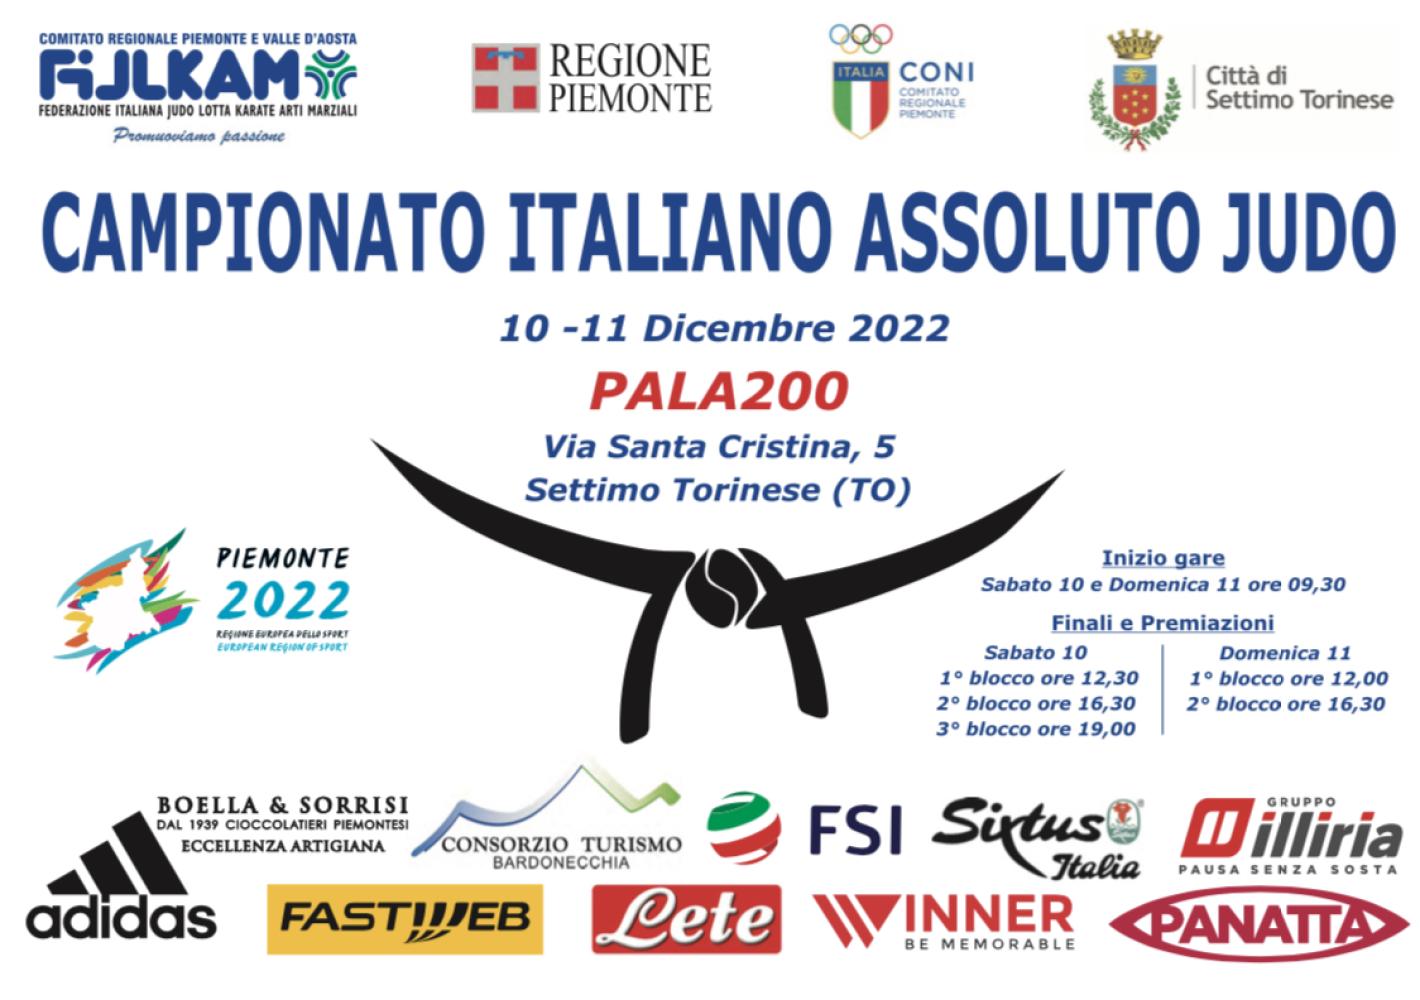 images/medium/CampionatiItalianiAssoluti2022.jpeg